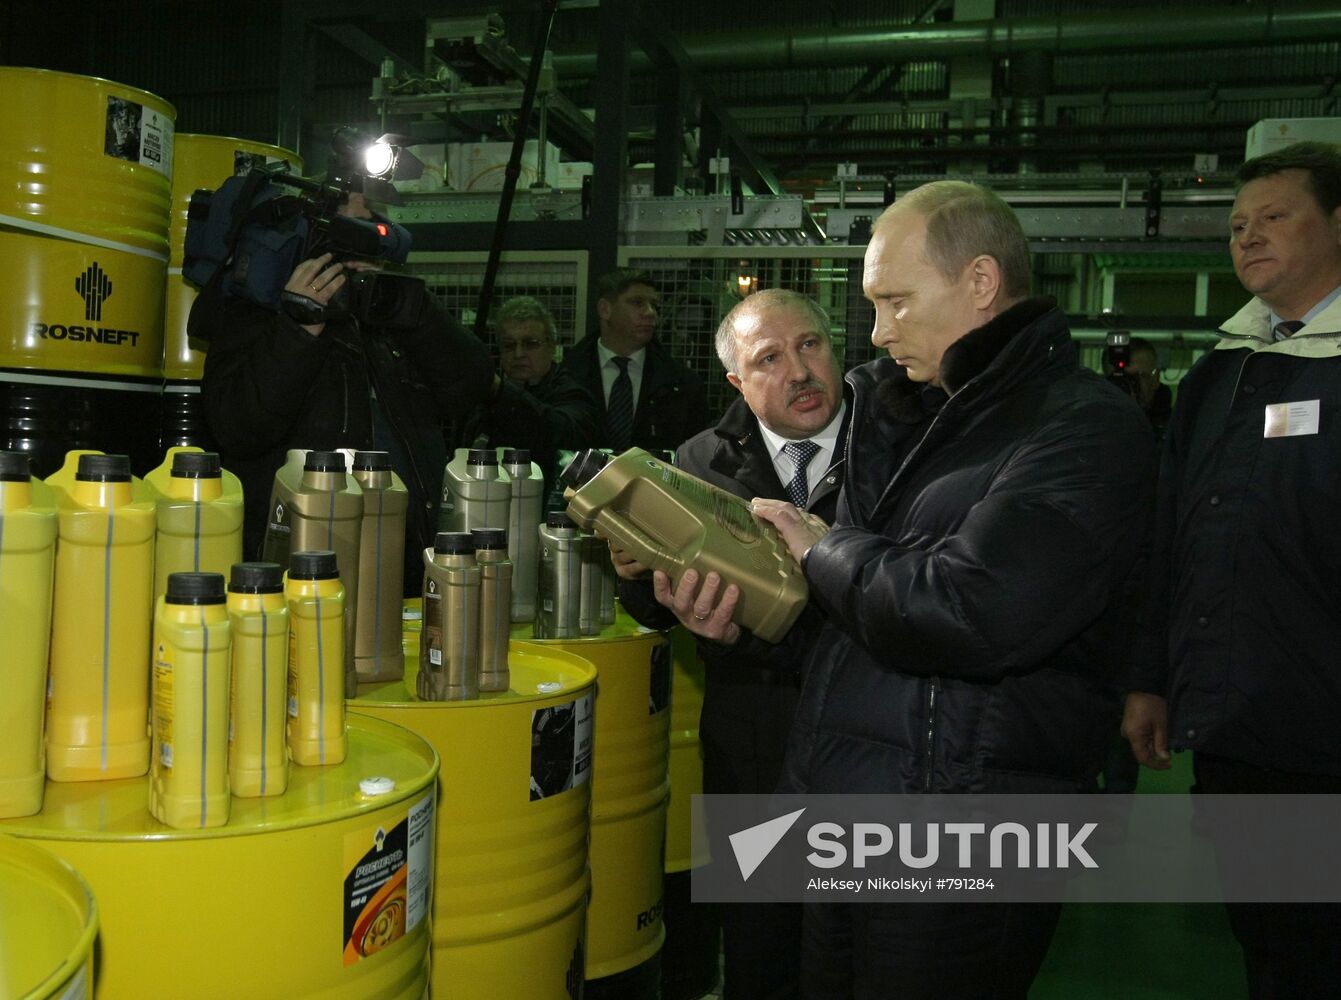 Vladimir Putin visits Samara